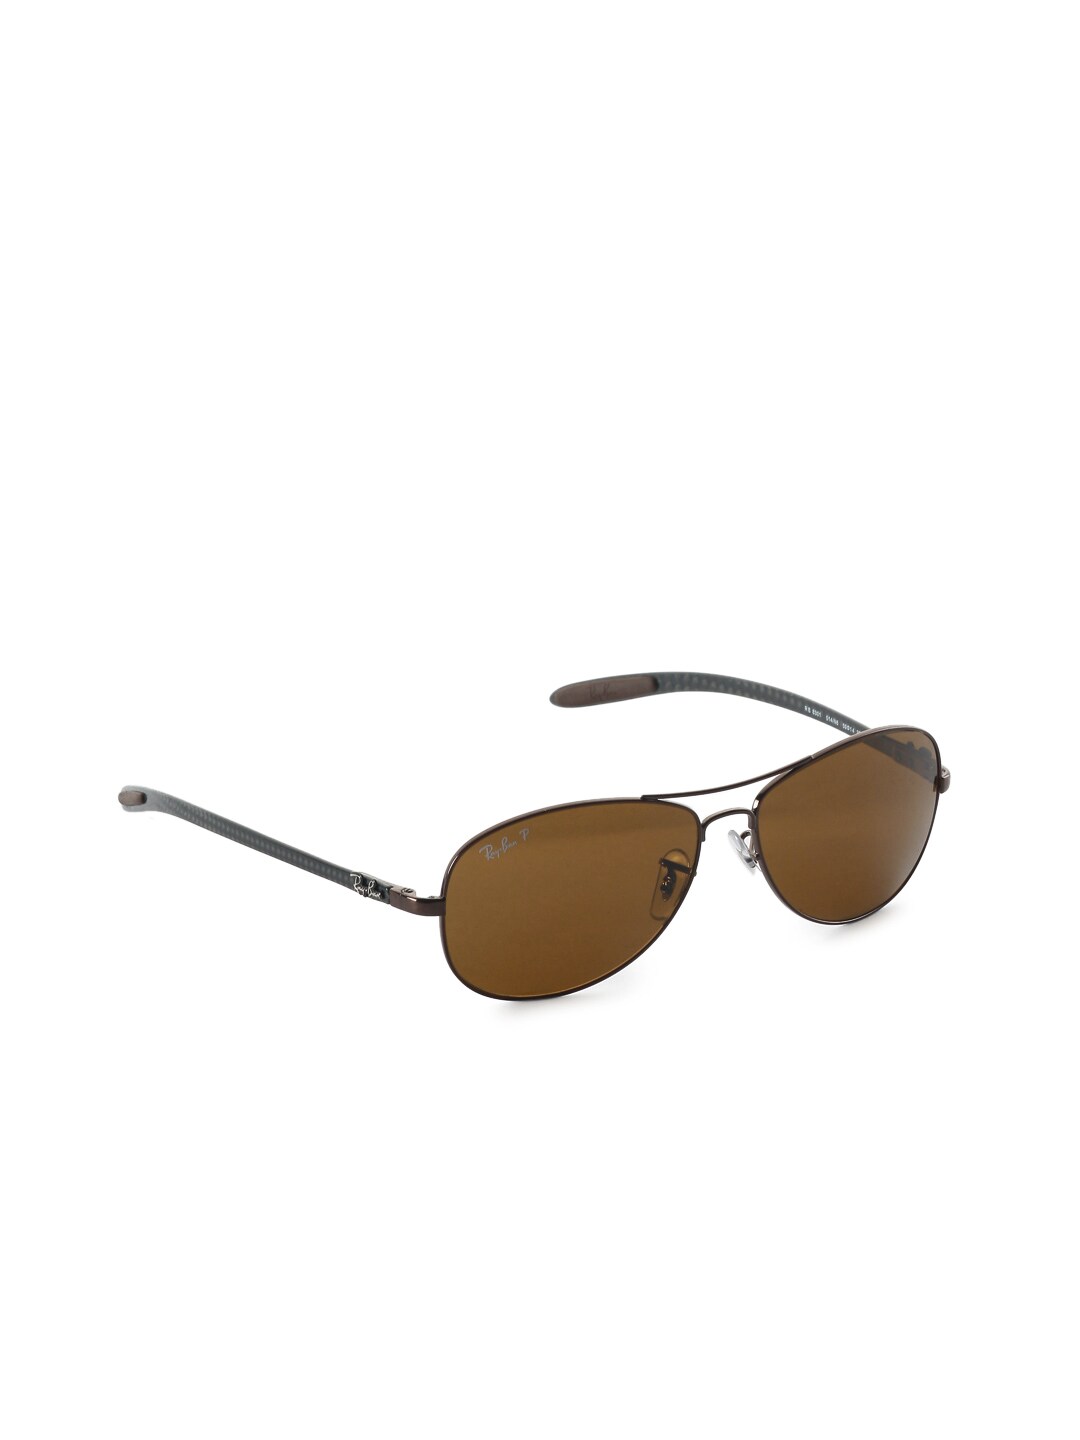 Ray-Ban Men Carbon Fibre Copper Sunglasses